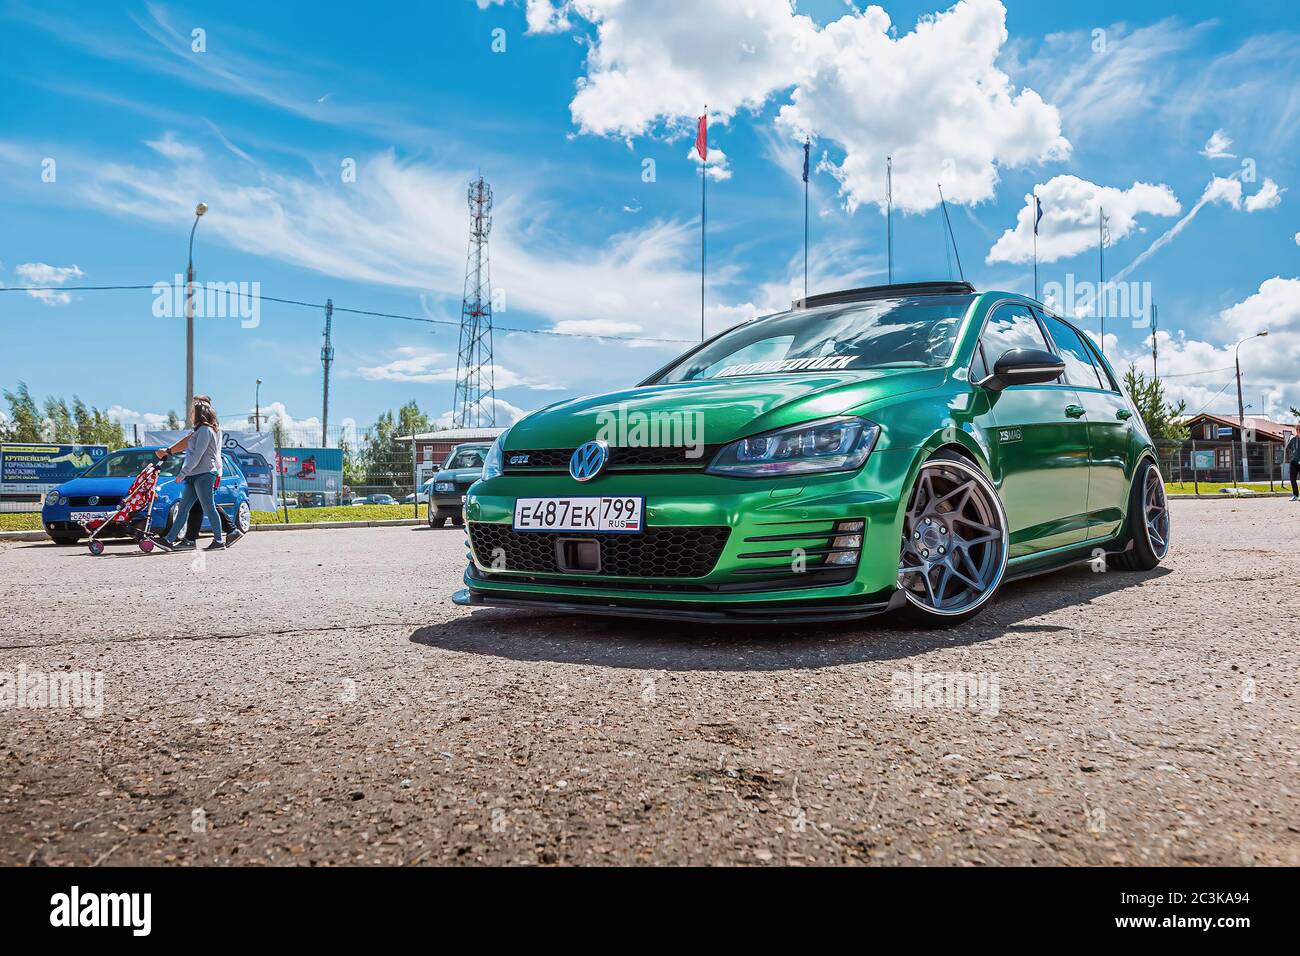 Moscou, Russie - 06 juillet 2019: Tuned Volkswagen Golf 7 serré dans un  film de vinyle vert. Roues exclusives installées, suspension pneumatique.  LowRider dans le parking Photo Stock - Alamy